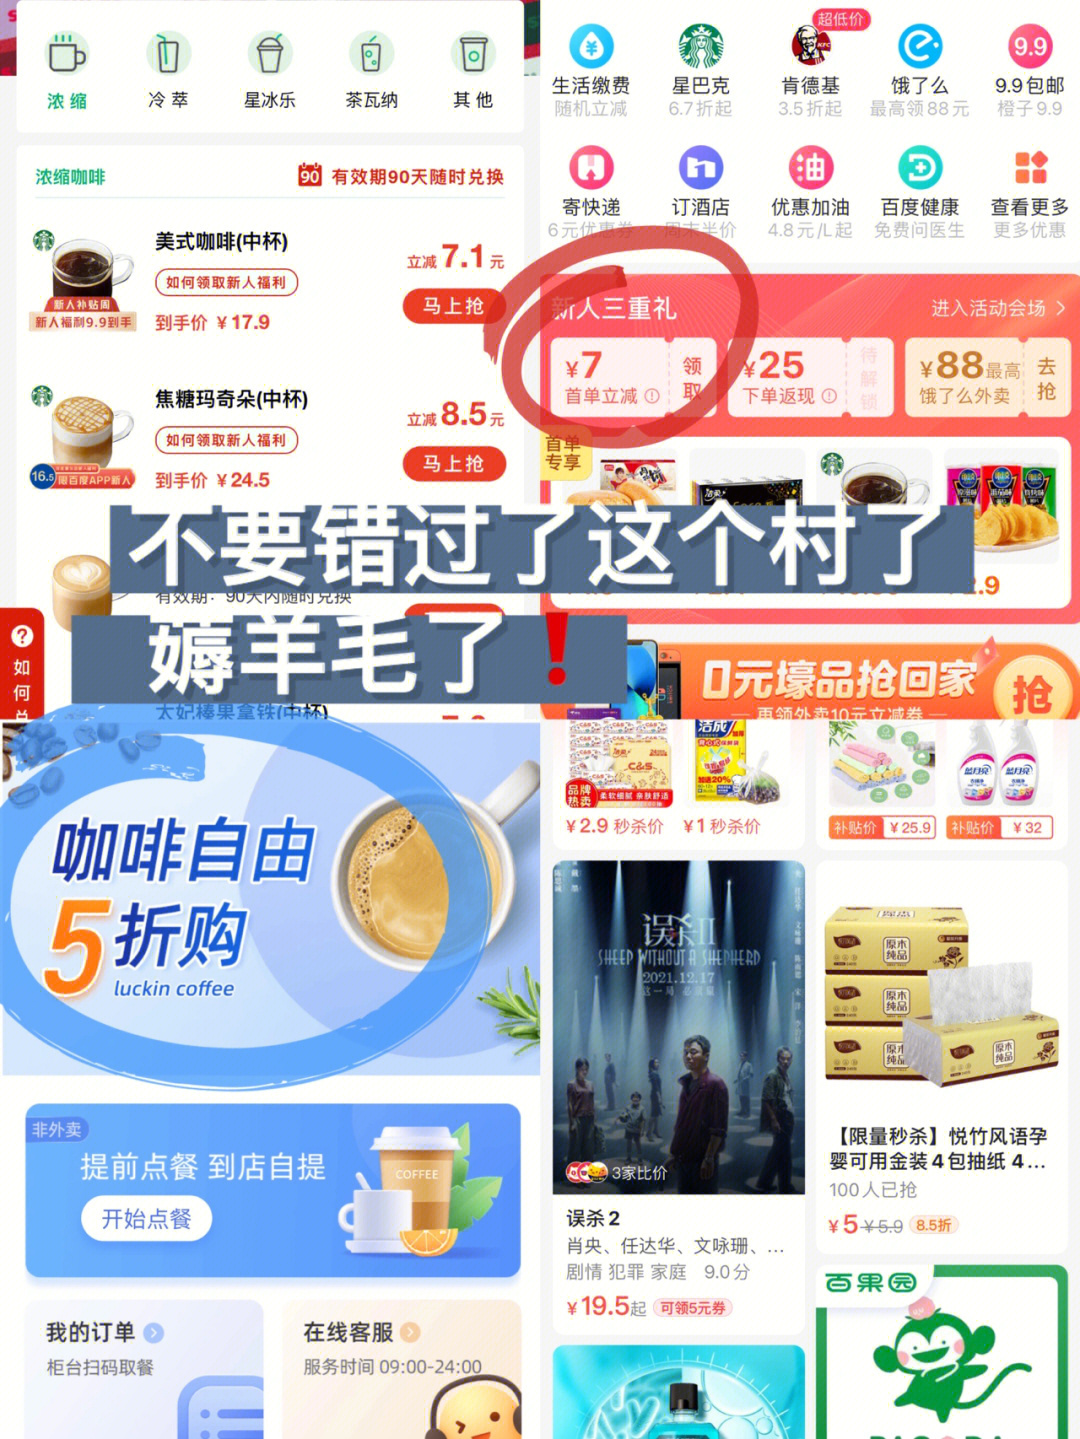 4r 拥有youku会员就可以观看精彩剧集《输赢》,《女心理师》,《小敏家